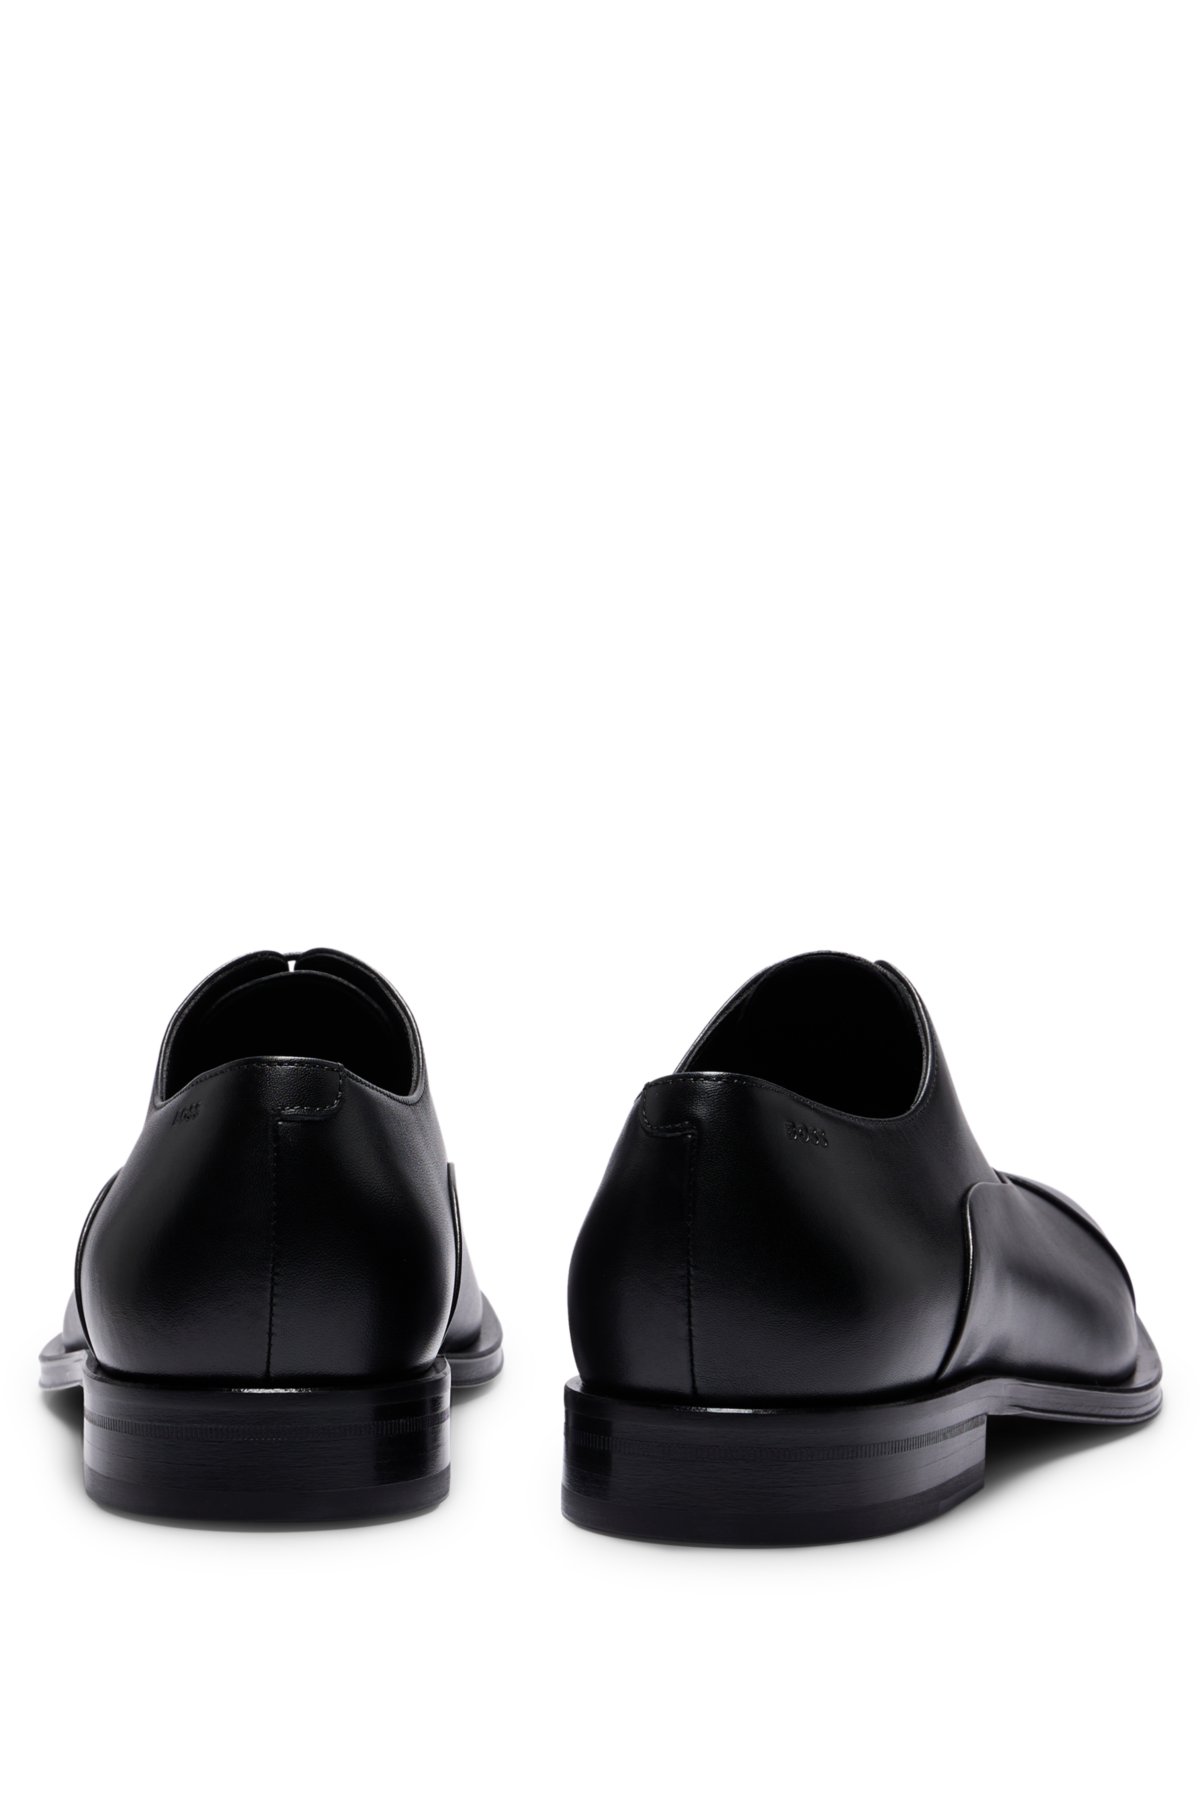 Louis Vuitton x NBA Capsule Collection  Dress shoes men, Loafers men,  Oxford shoes